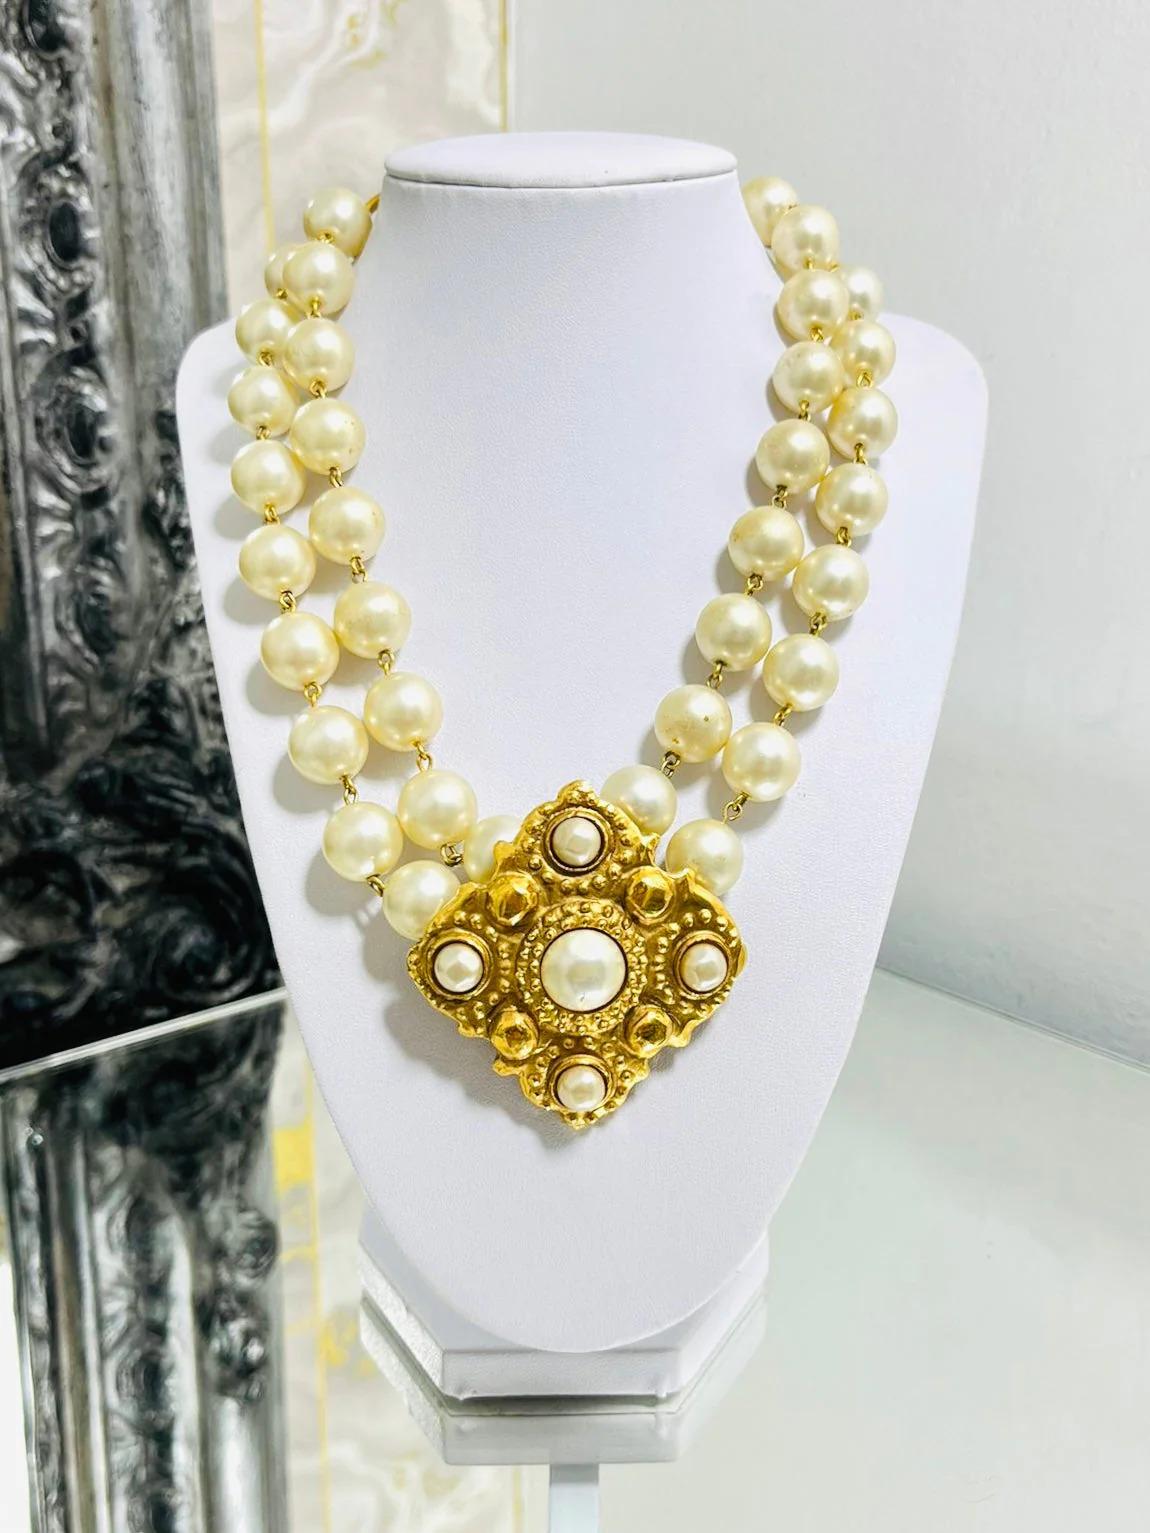 Chanel 1980's Vintage Perle & 24k vergoldet Halskette

Doppelter Strang mit großem Diamant in der Mitte, gehämmert und mit Perlen besetzt. Goldfarbener Kettenverschluss mit baumelndem 'CC'-Logo.

Zusätzliche Informationen:
Größe -